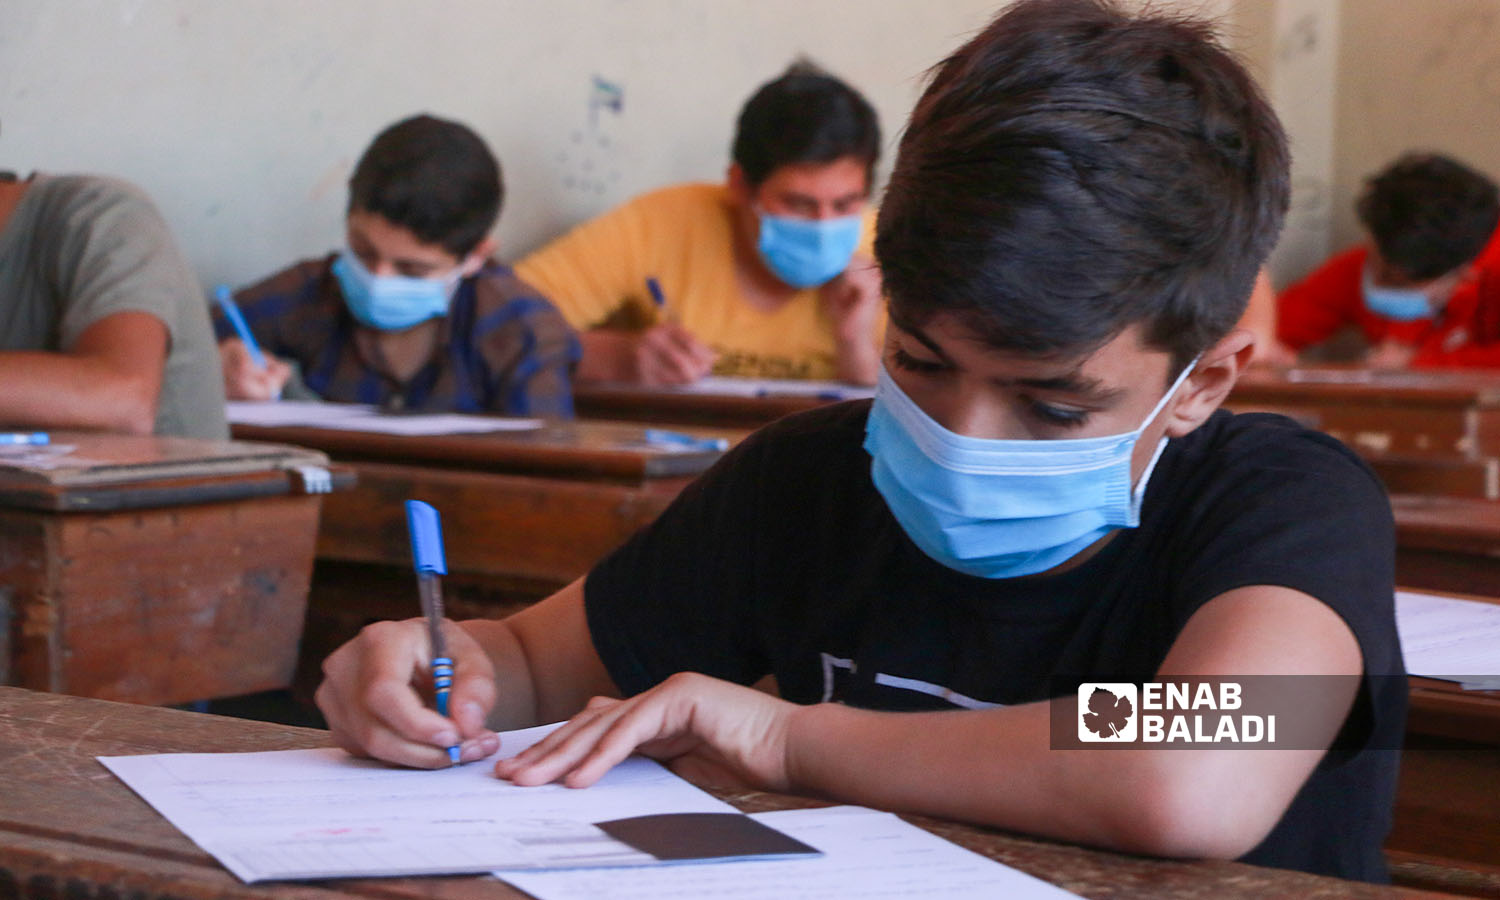 طالب يقدم امتحان التعليم الأساسي في مدينة إدلب (عنب بلدي/ أنس الخولي)